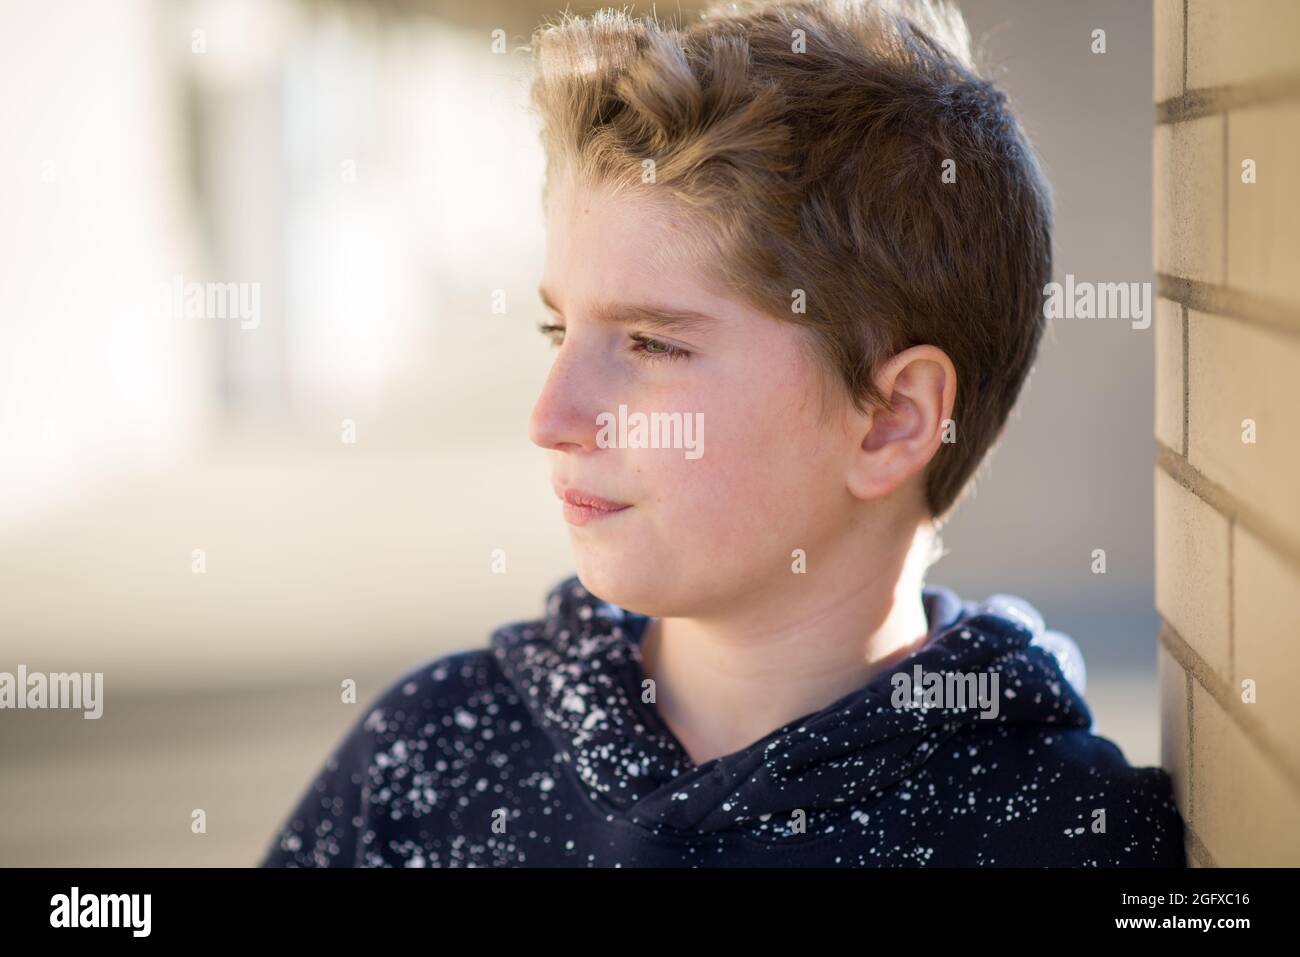 Retrato de un chico lindo con pelo rubio Foto de stock